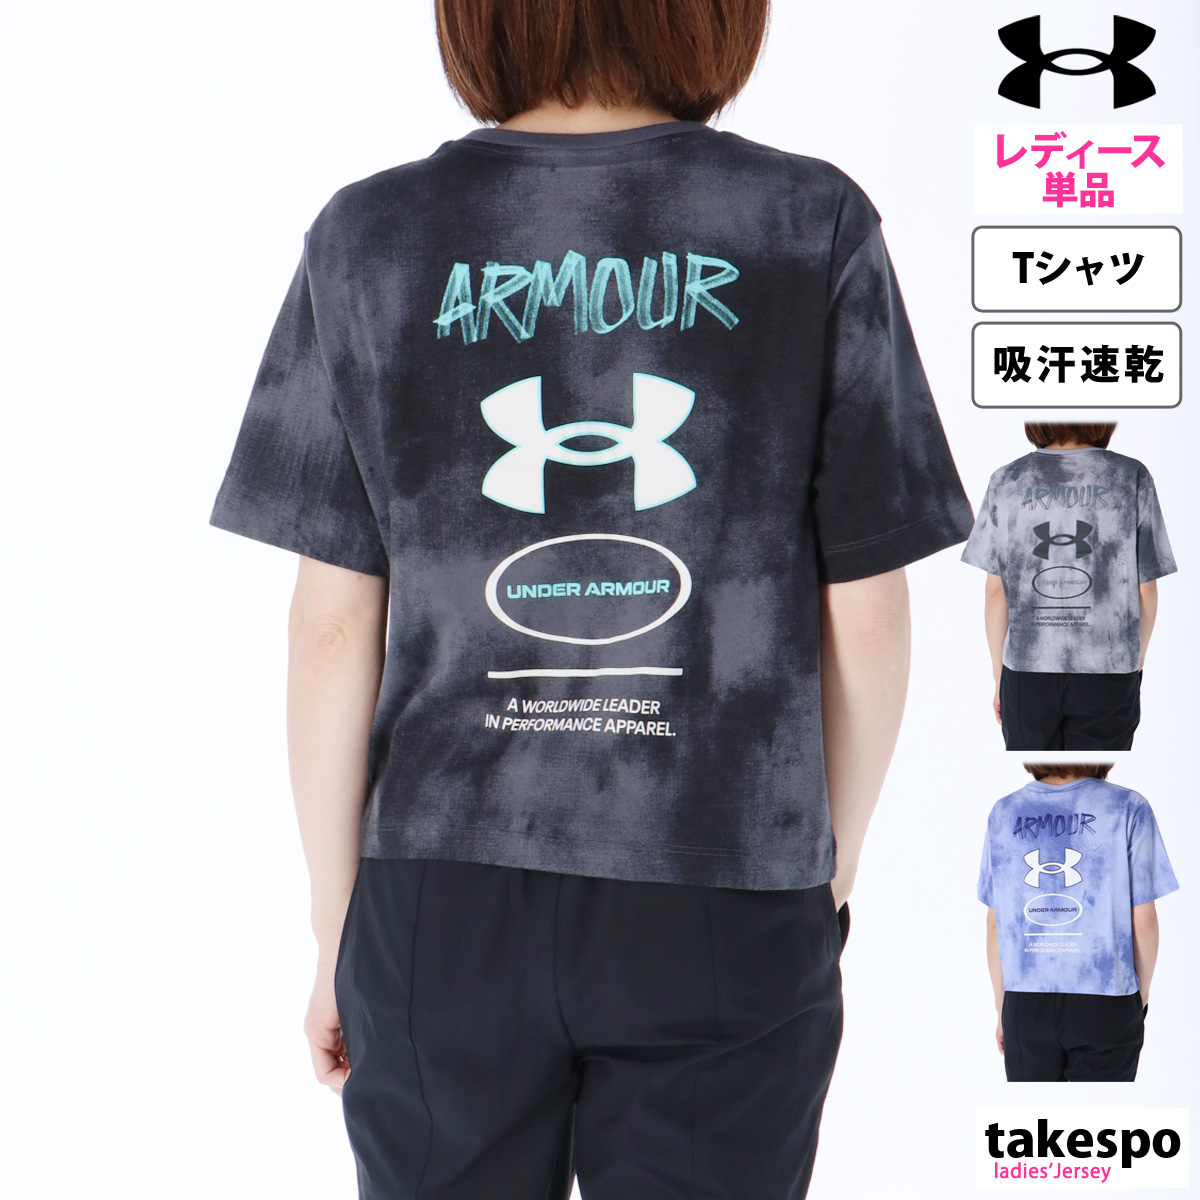 アンダーアーマー Tシャツ レディース 上 UNDER ARMOUR 半袖 吸汗 速乾 バックプリント クロップド丈 1384715 新作